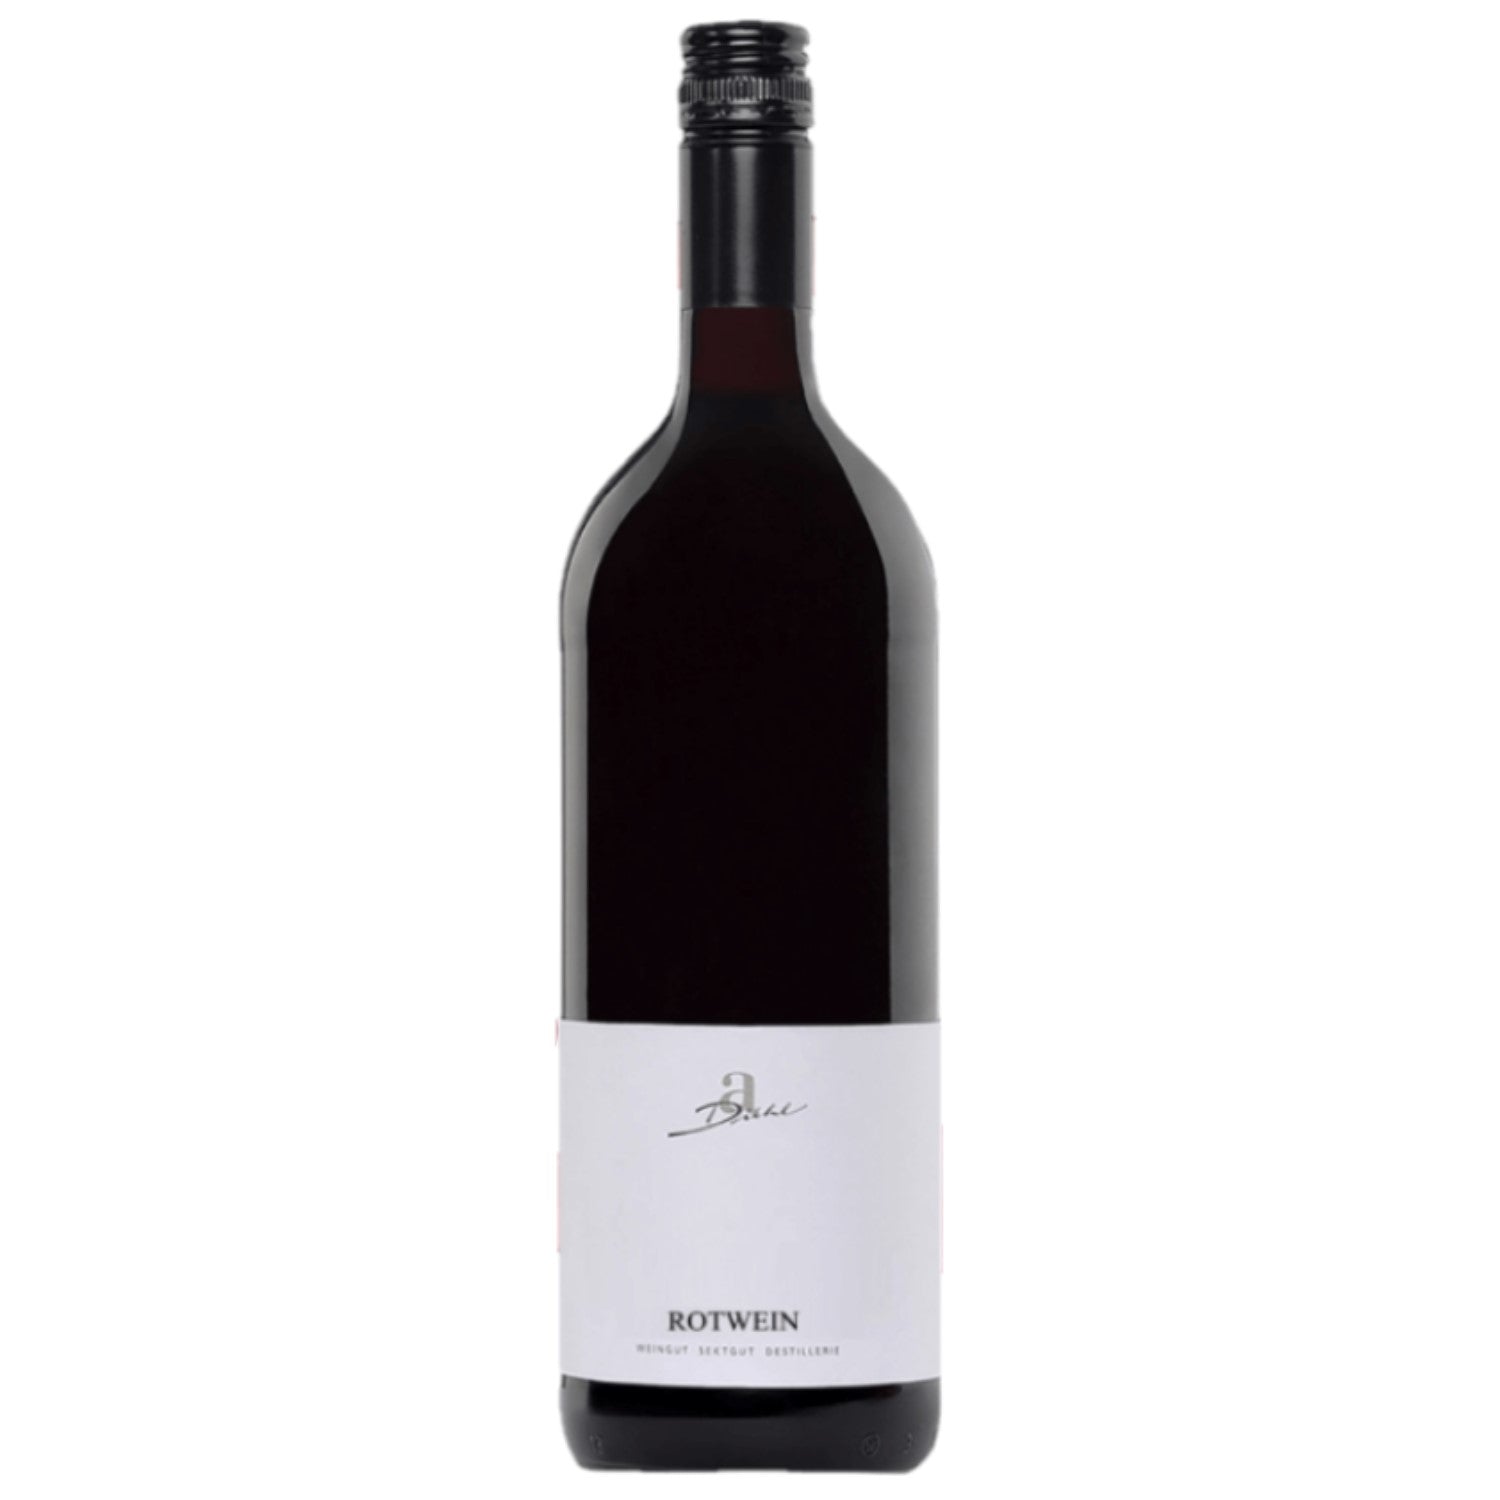 A. Diehl Rotwein Cuvée süss Pfalz Dt. Qualitätswein (12 x 1.0l) - Versanel -